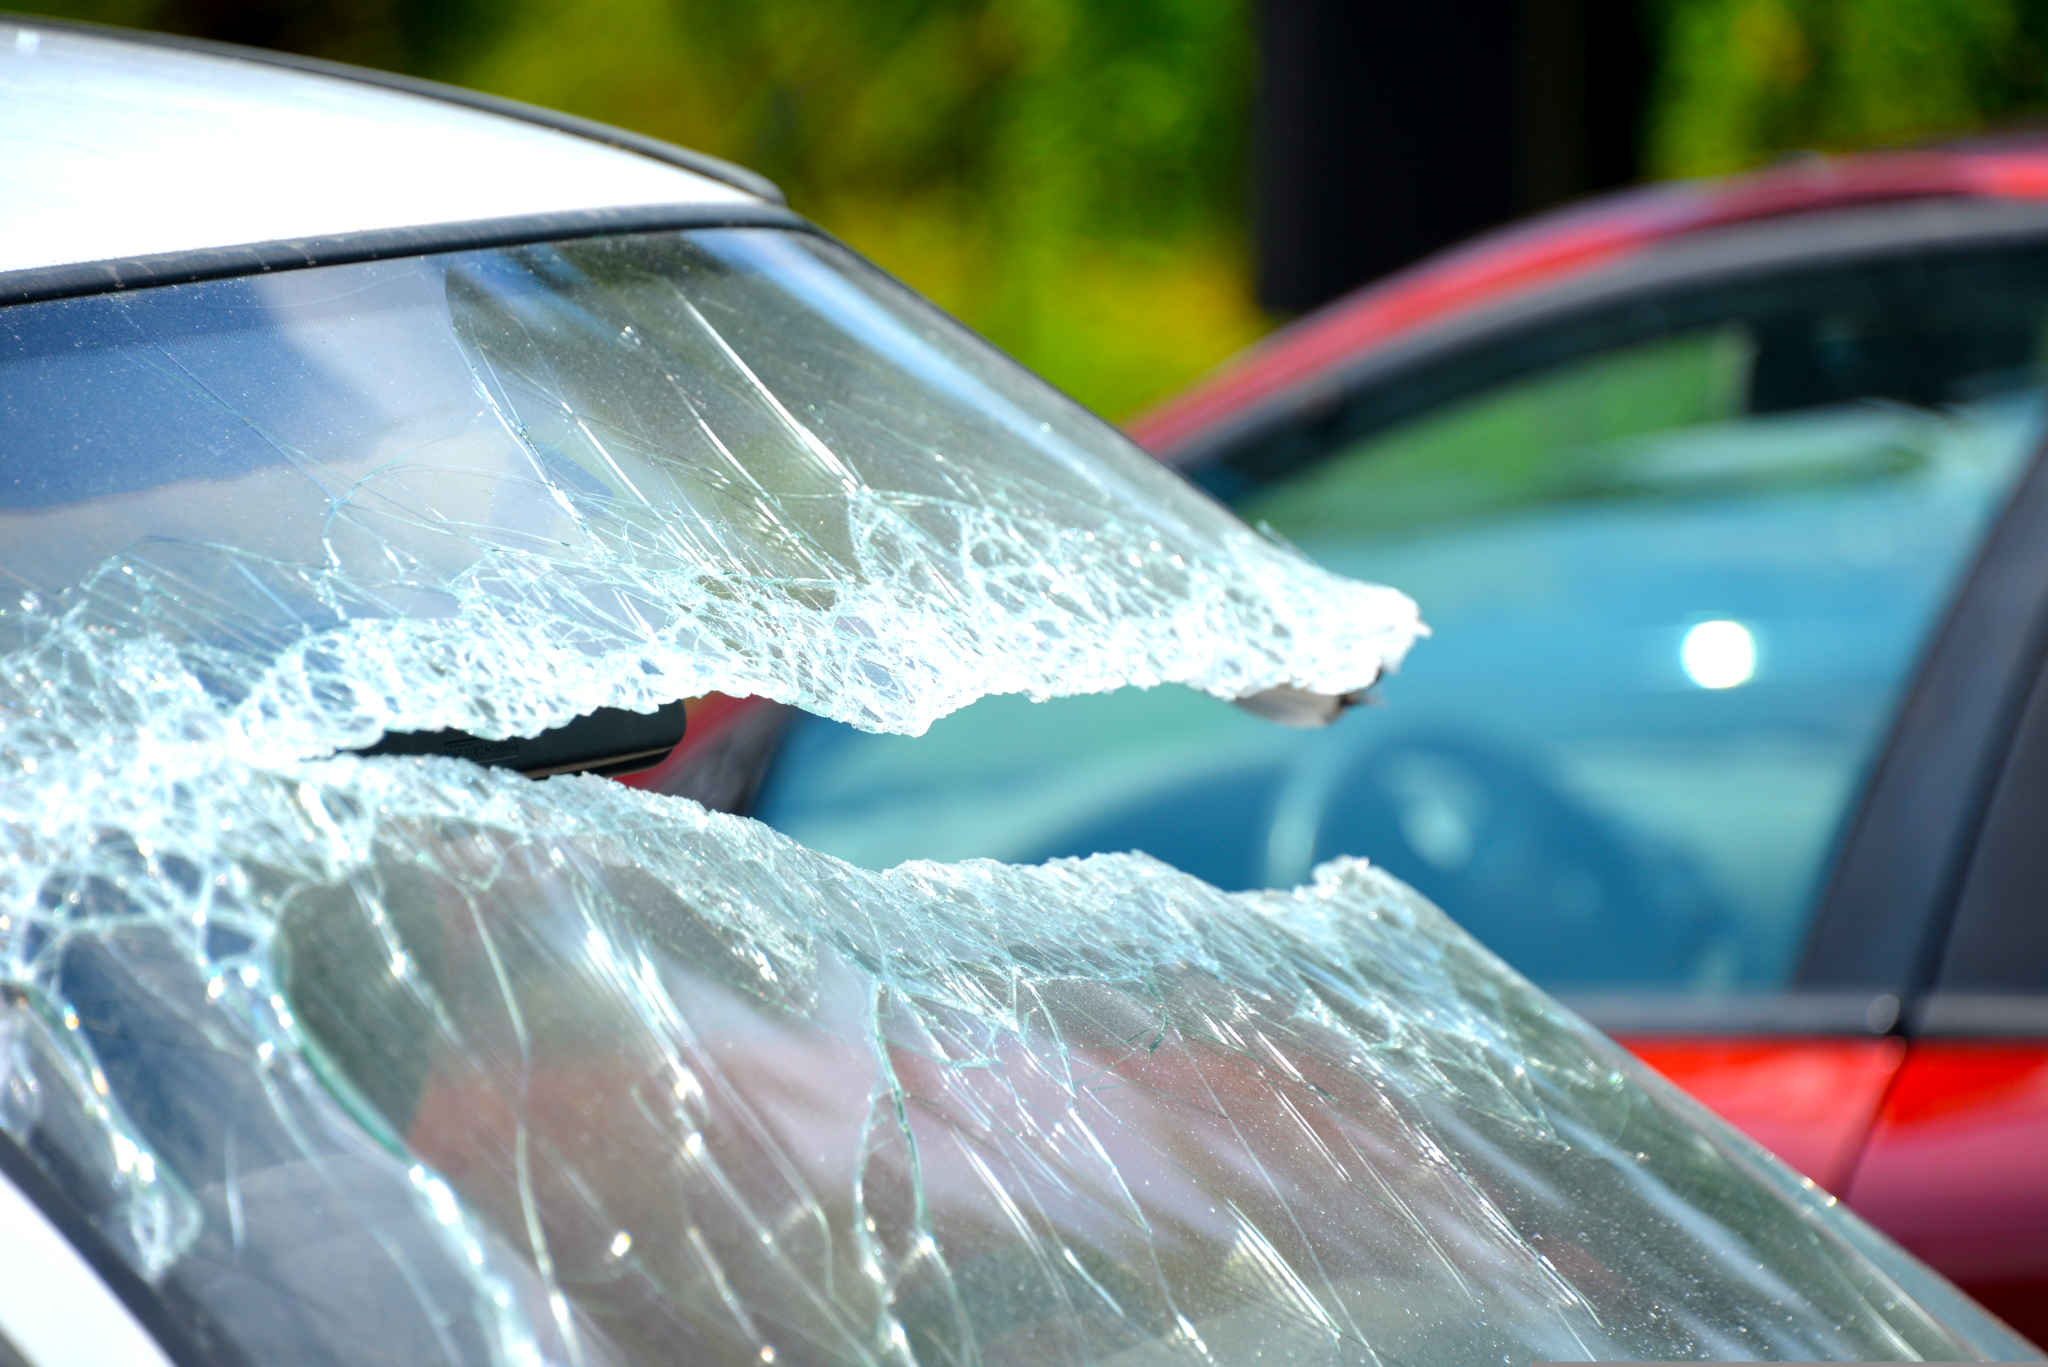 Przyczyny uszkodzeń szyb samochodowych i jak ich uniknąć